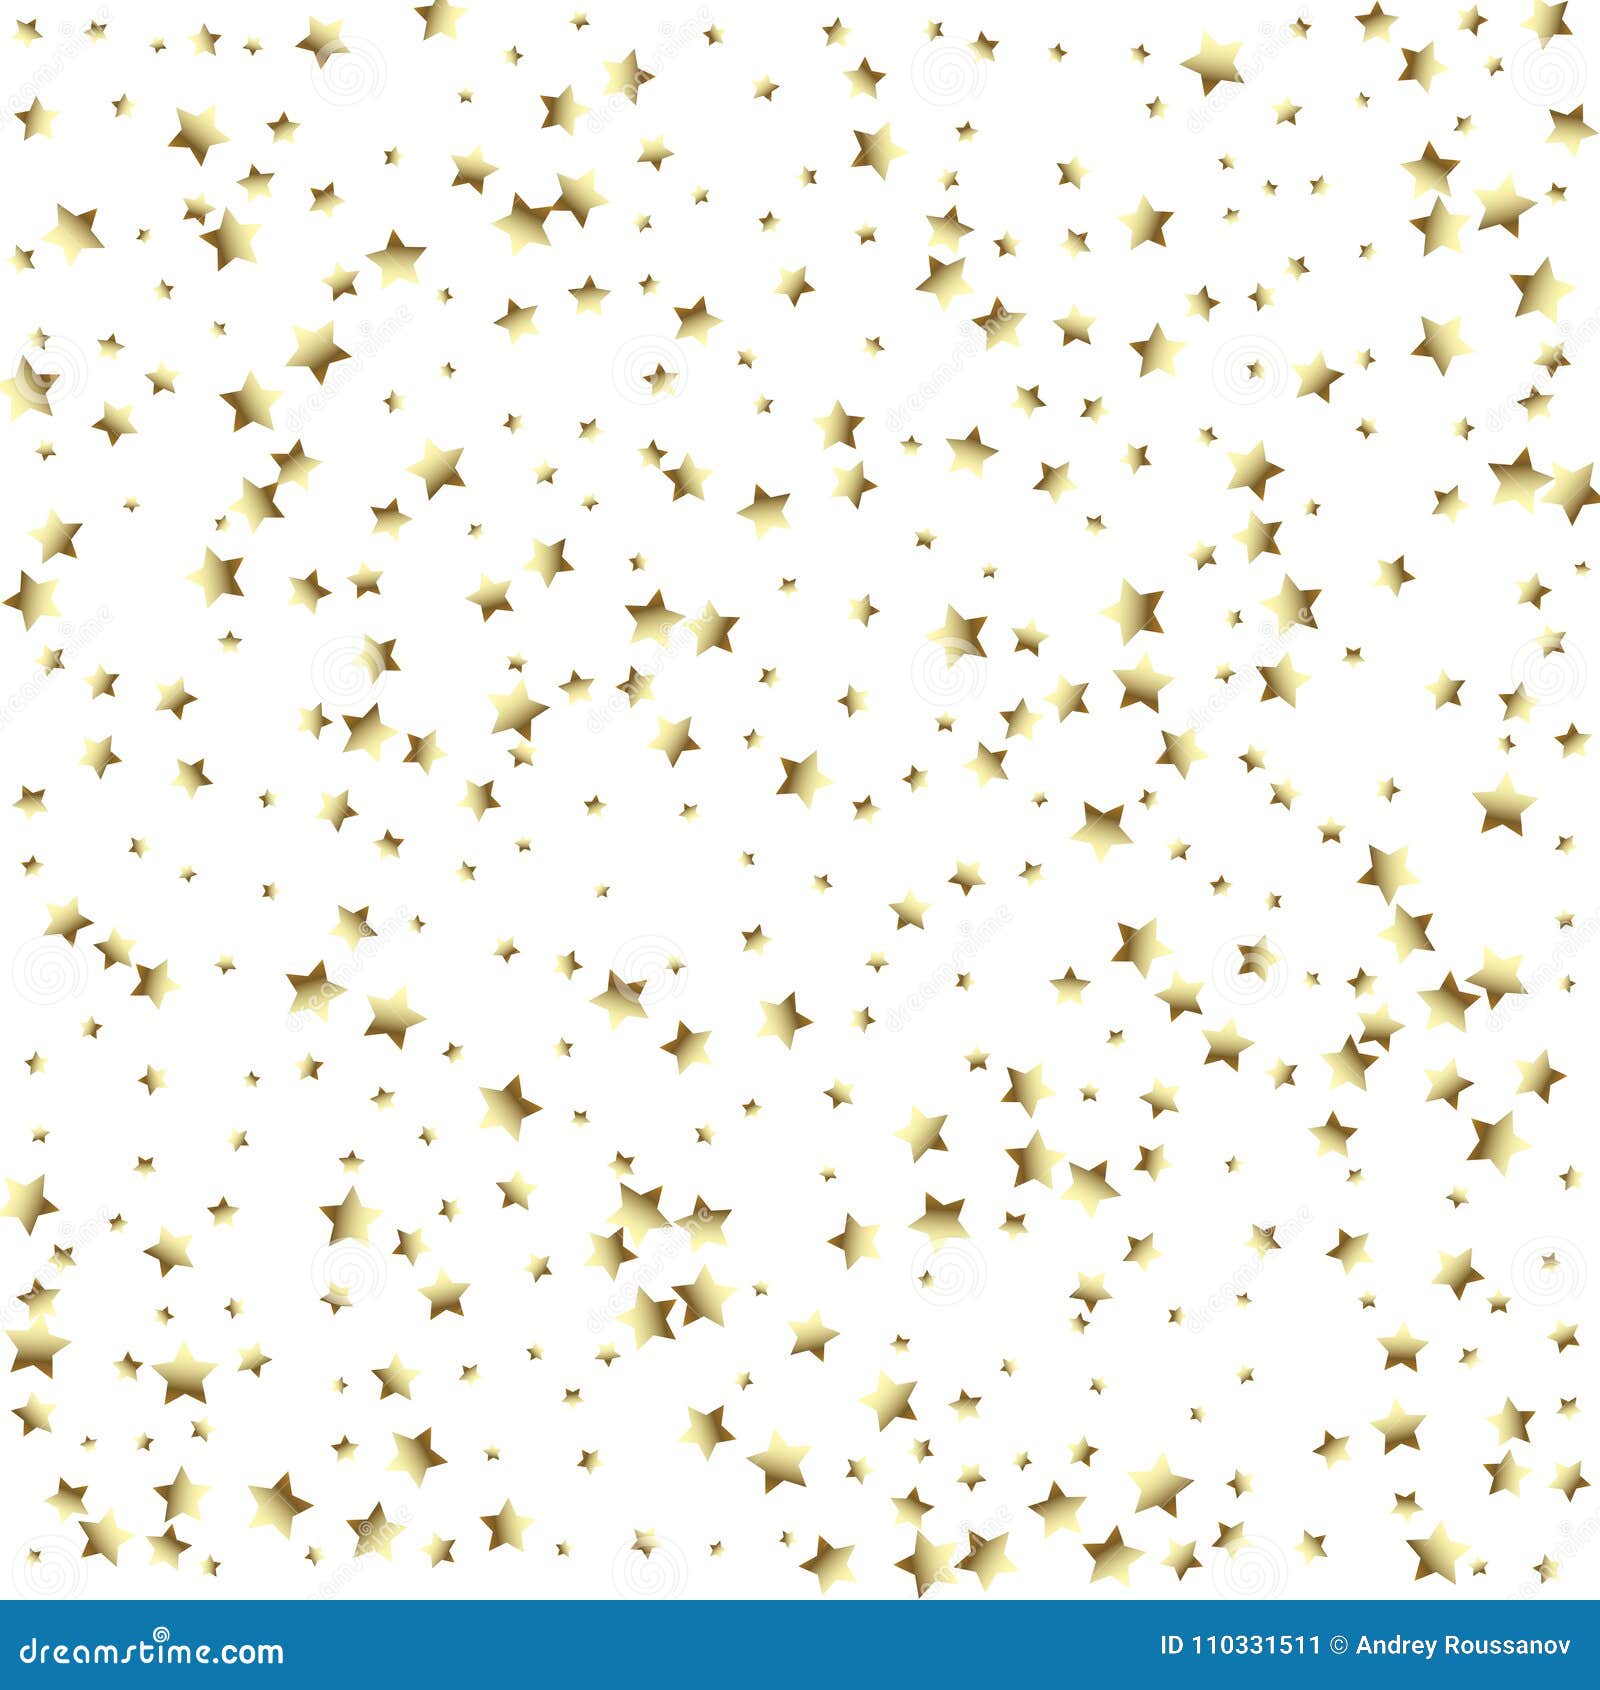 Nền sao vàng bóng là một giải pháp tuyệt vời để làm nổi bật hình ảnh của bạn. Với một miếng nền sao vàng đẹp, bạn có thể truyền tải được rõ ràng thông điệp và tạo ra những khoảnh khắc đáng nhớ.